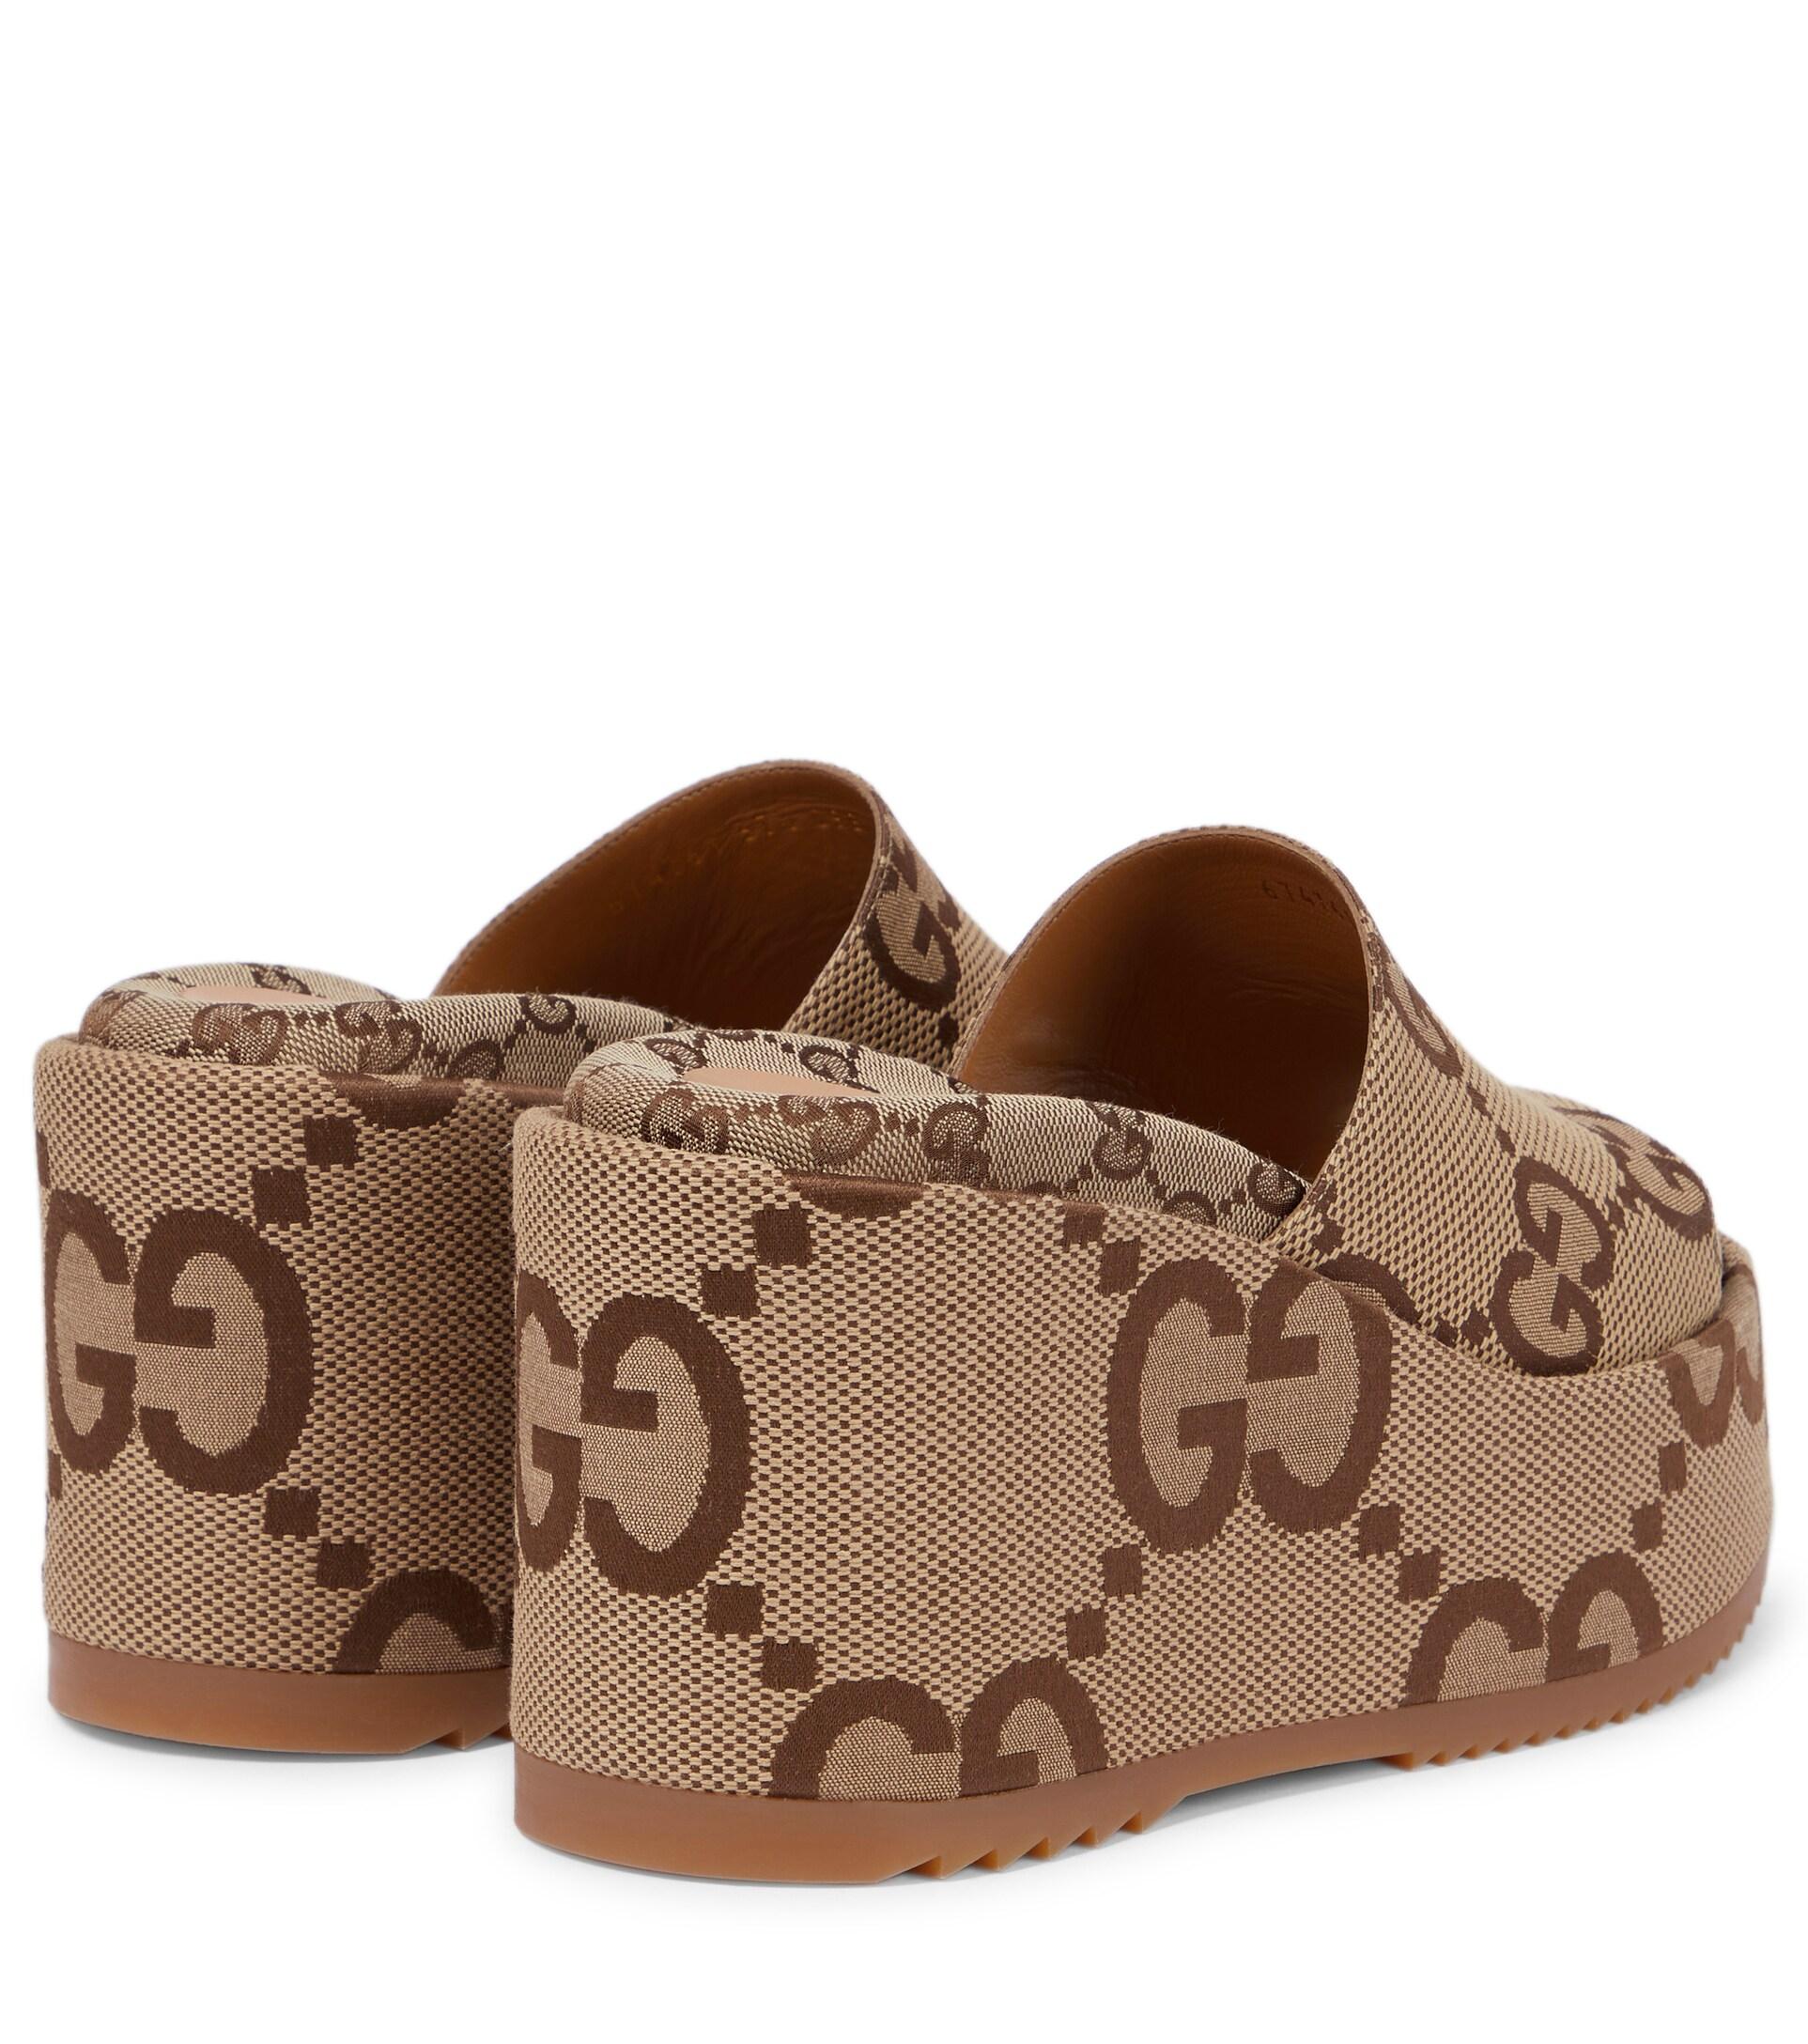 Gucci GG Supreme Platform Sandals in Brown